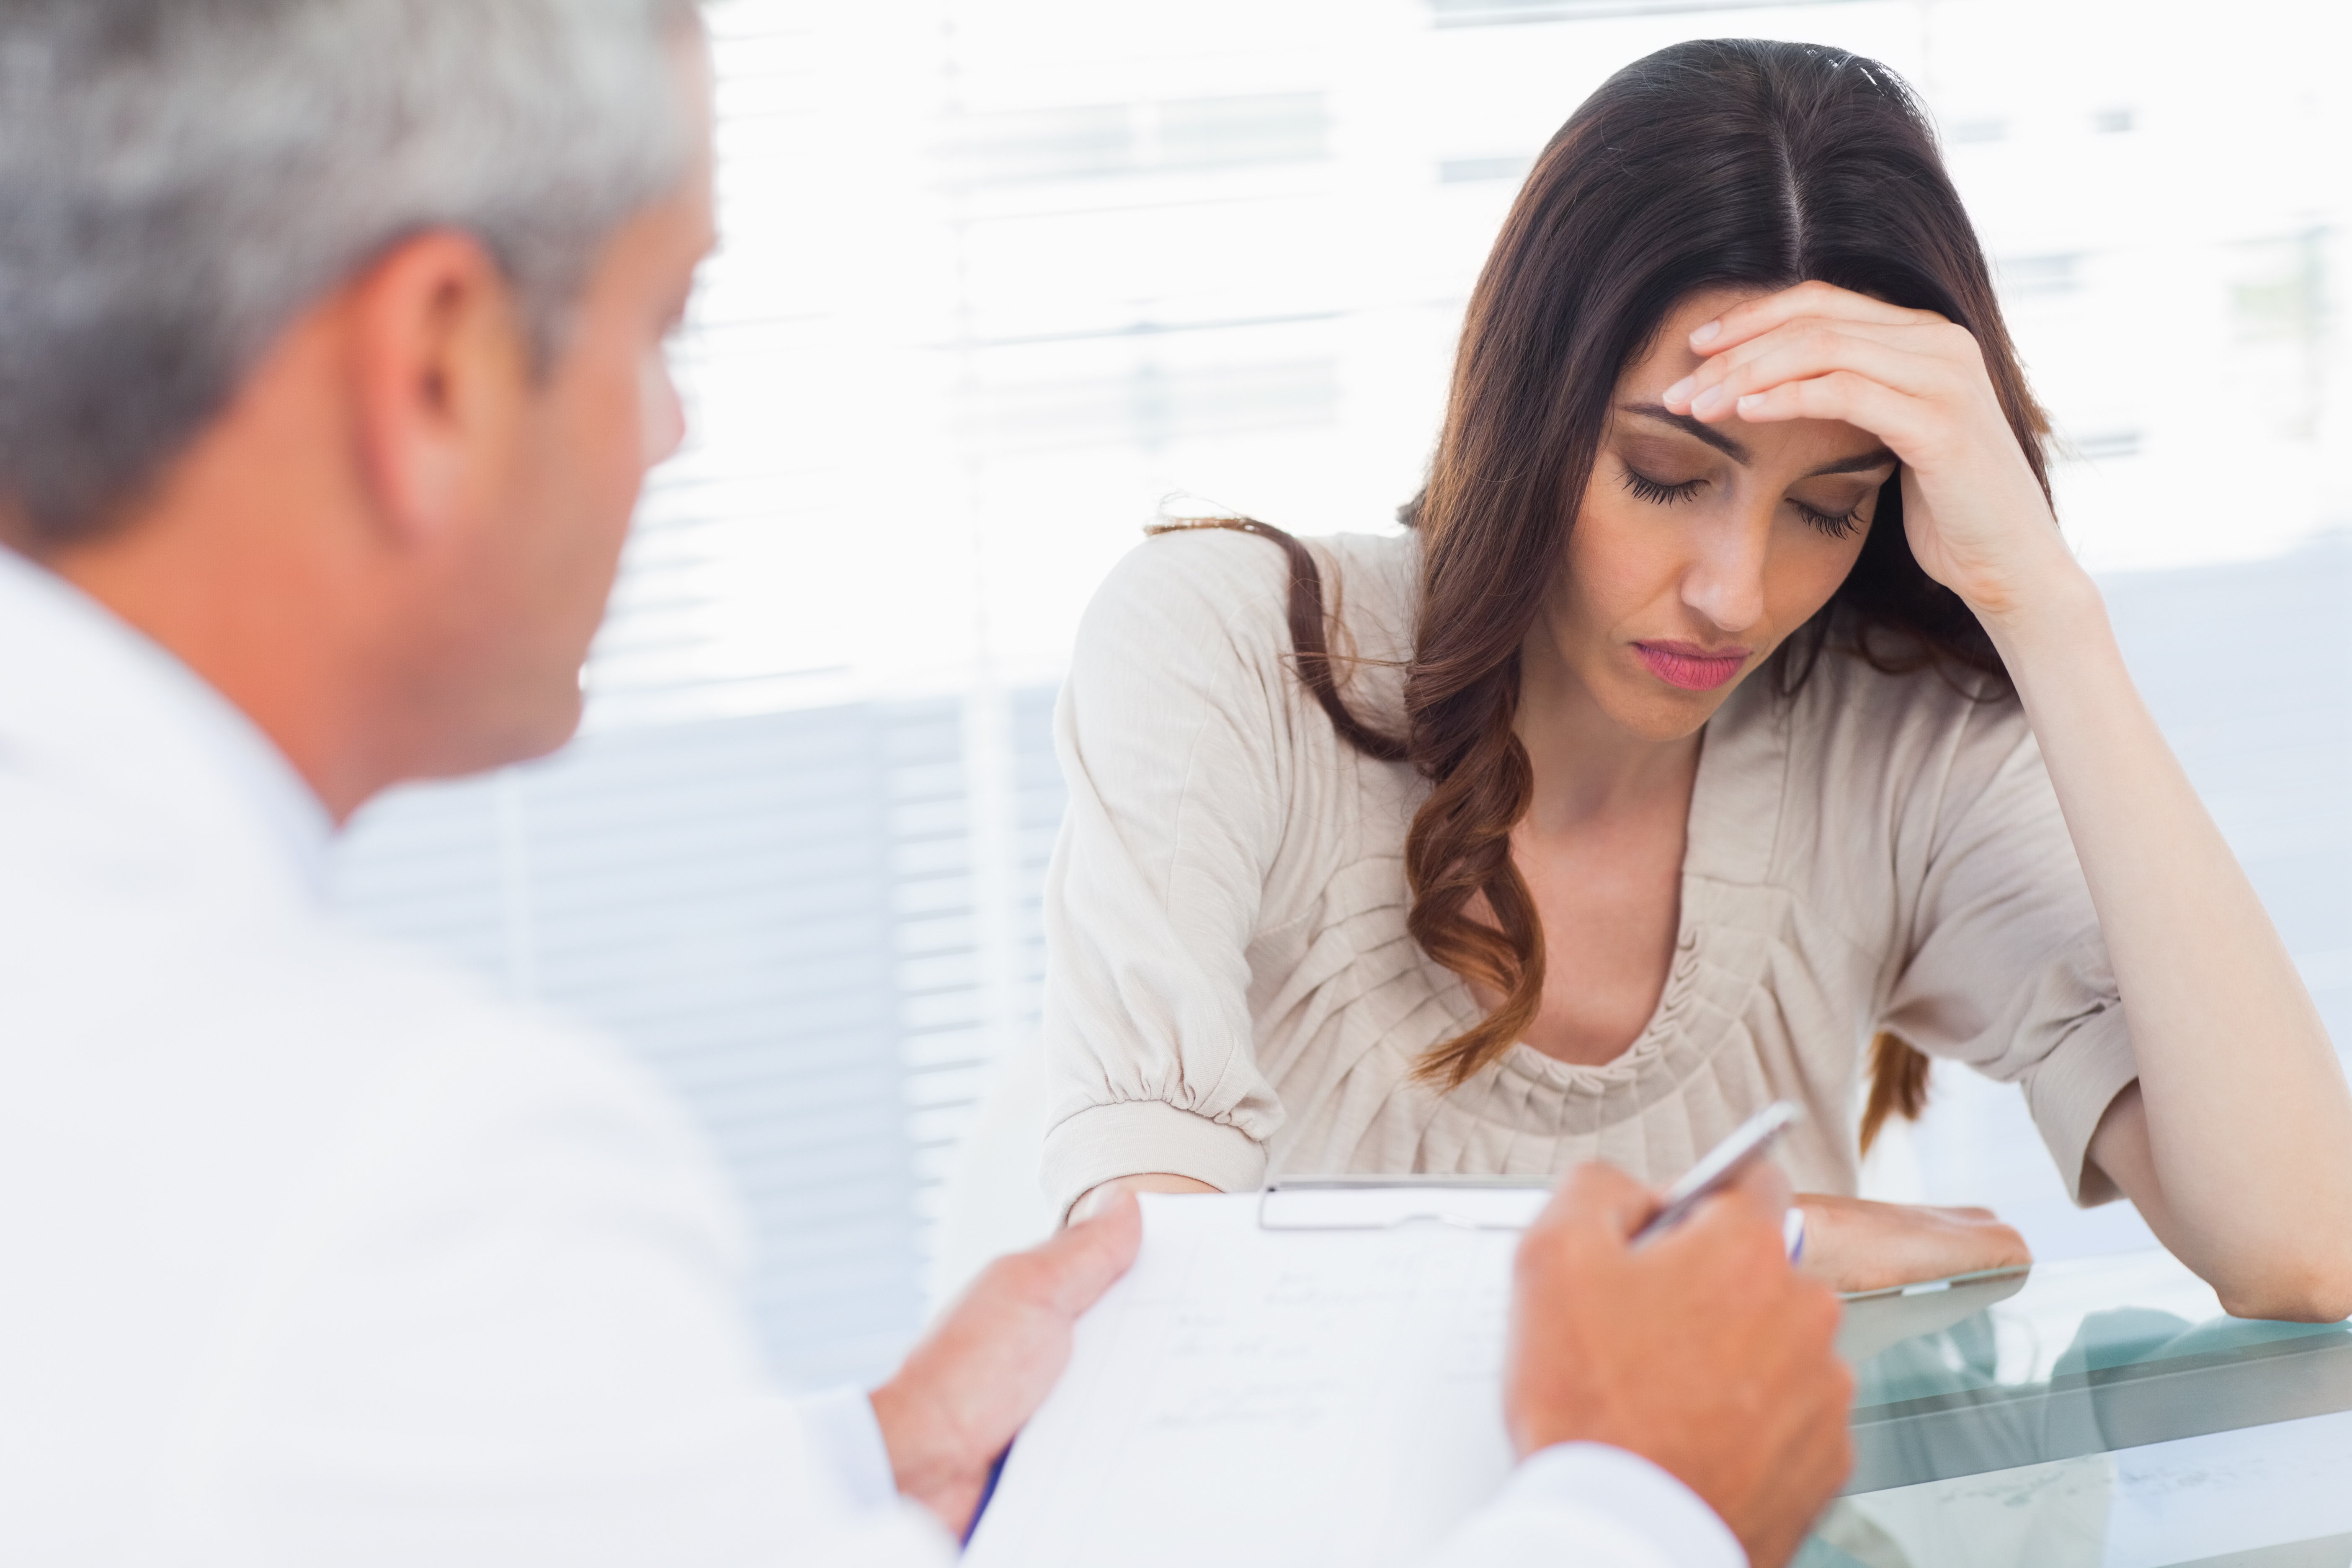 Mujer recibe malas noticias en consultorio médico. | Foto: Shutterstock